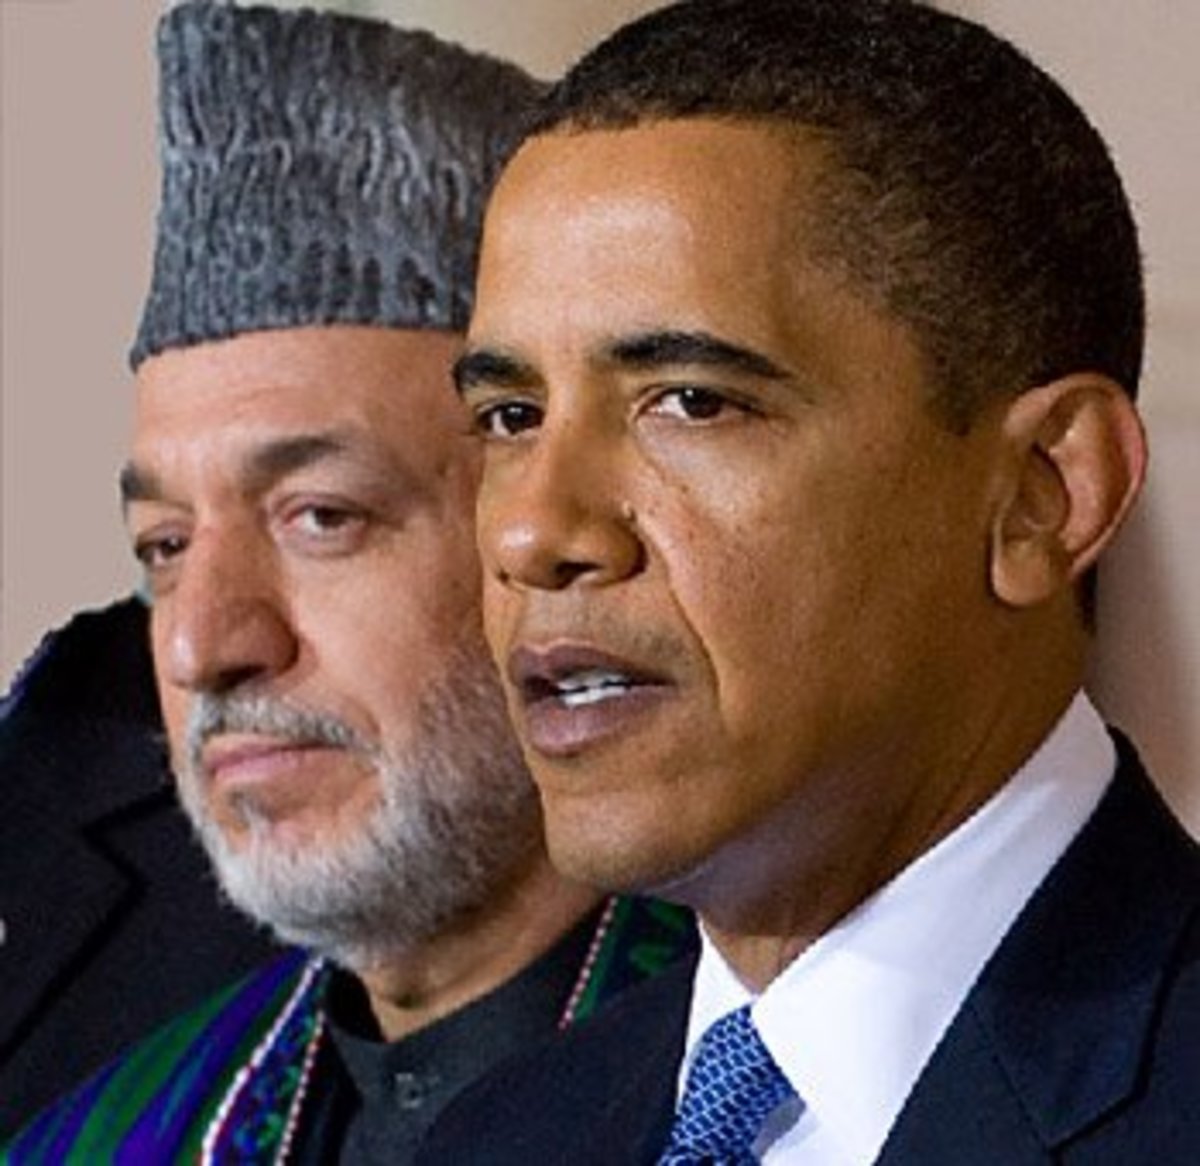 karzai and obama